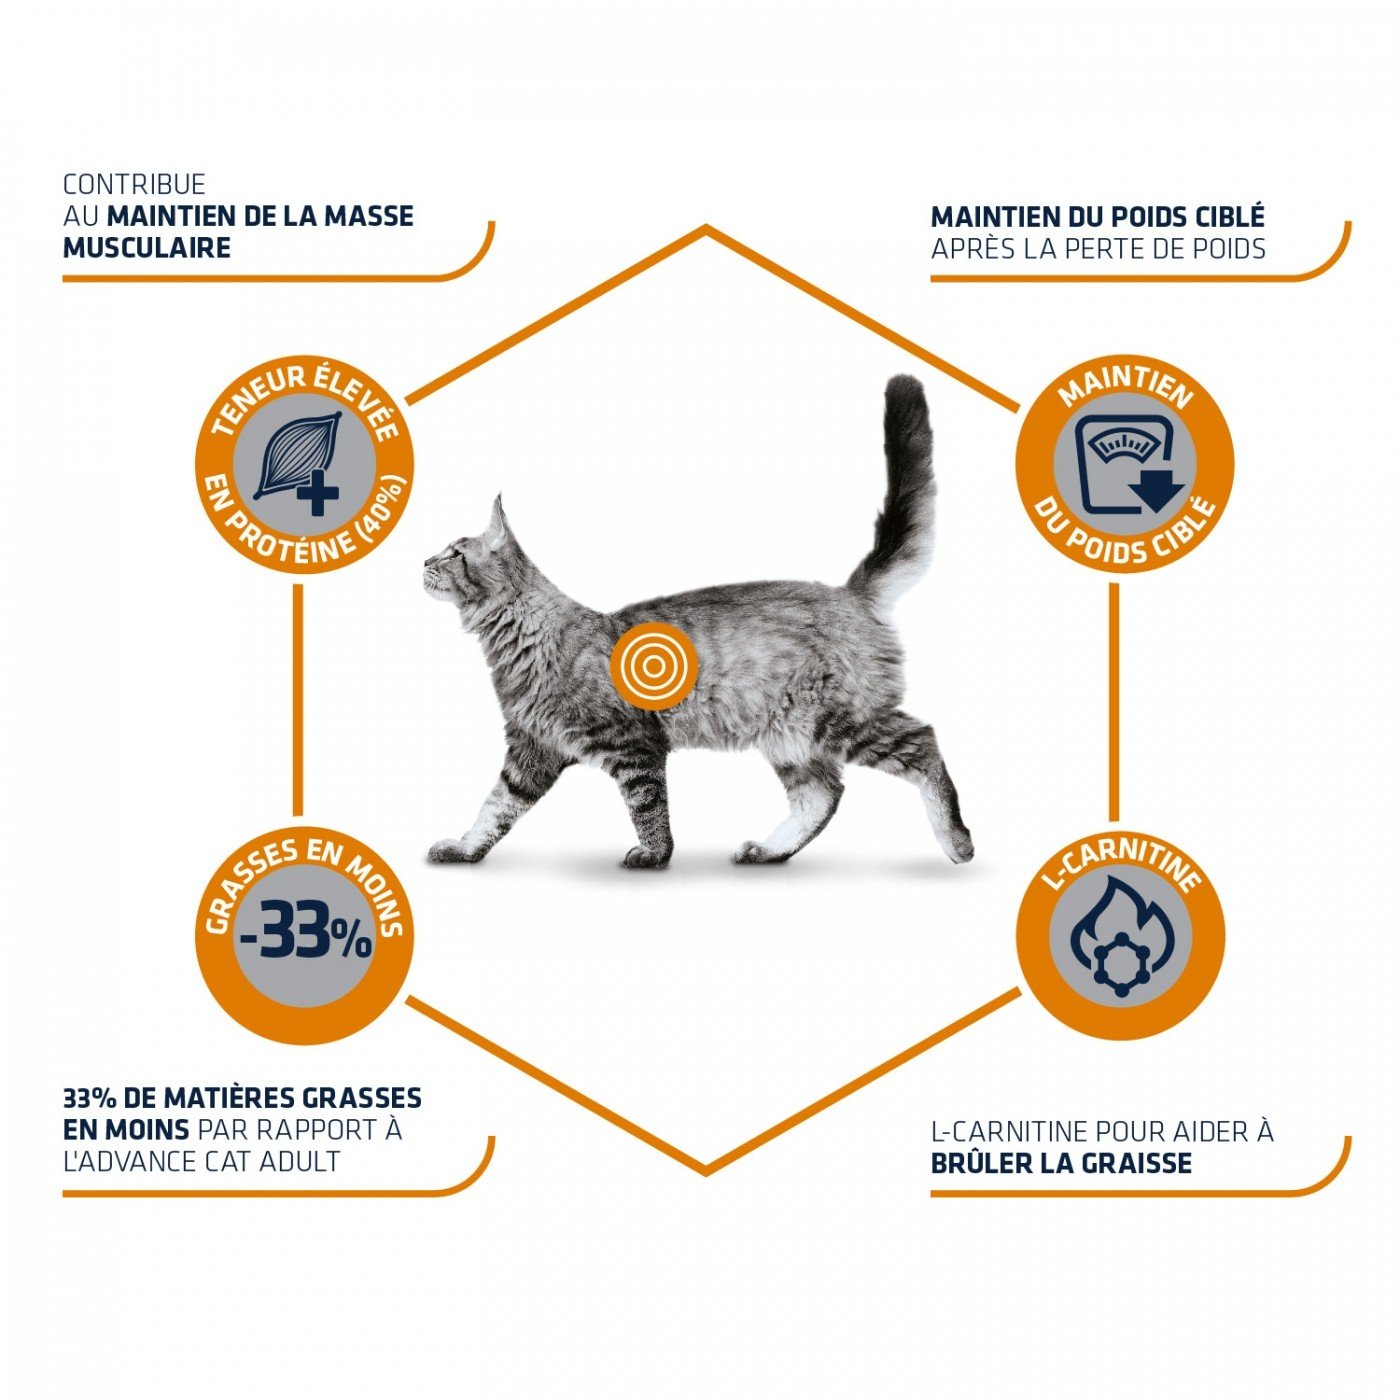 Advance Veterinary Diets Weight Balance per gatti in sovrappeso